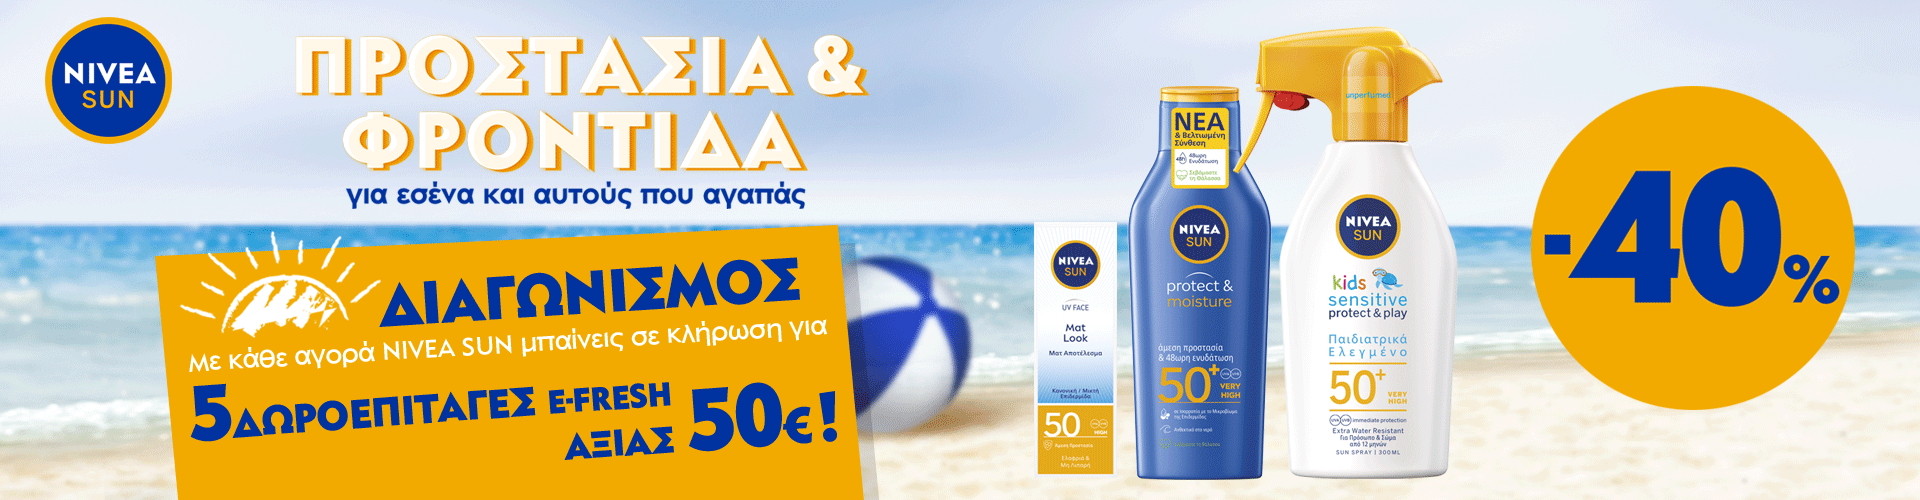 Αγοράζοντας προϊόντα Νivea Sun μπαίνετε στην κλήρωση για 5 δωροεπιταγές των 50€